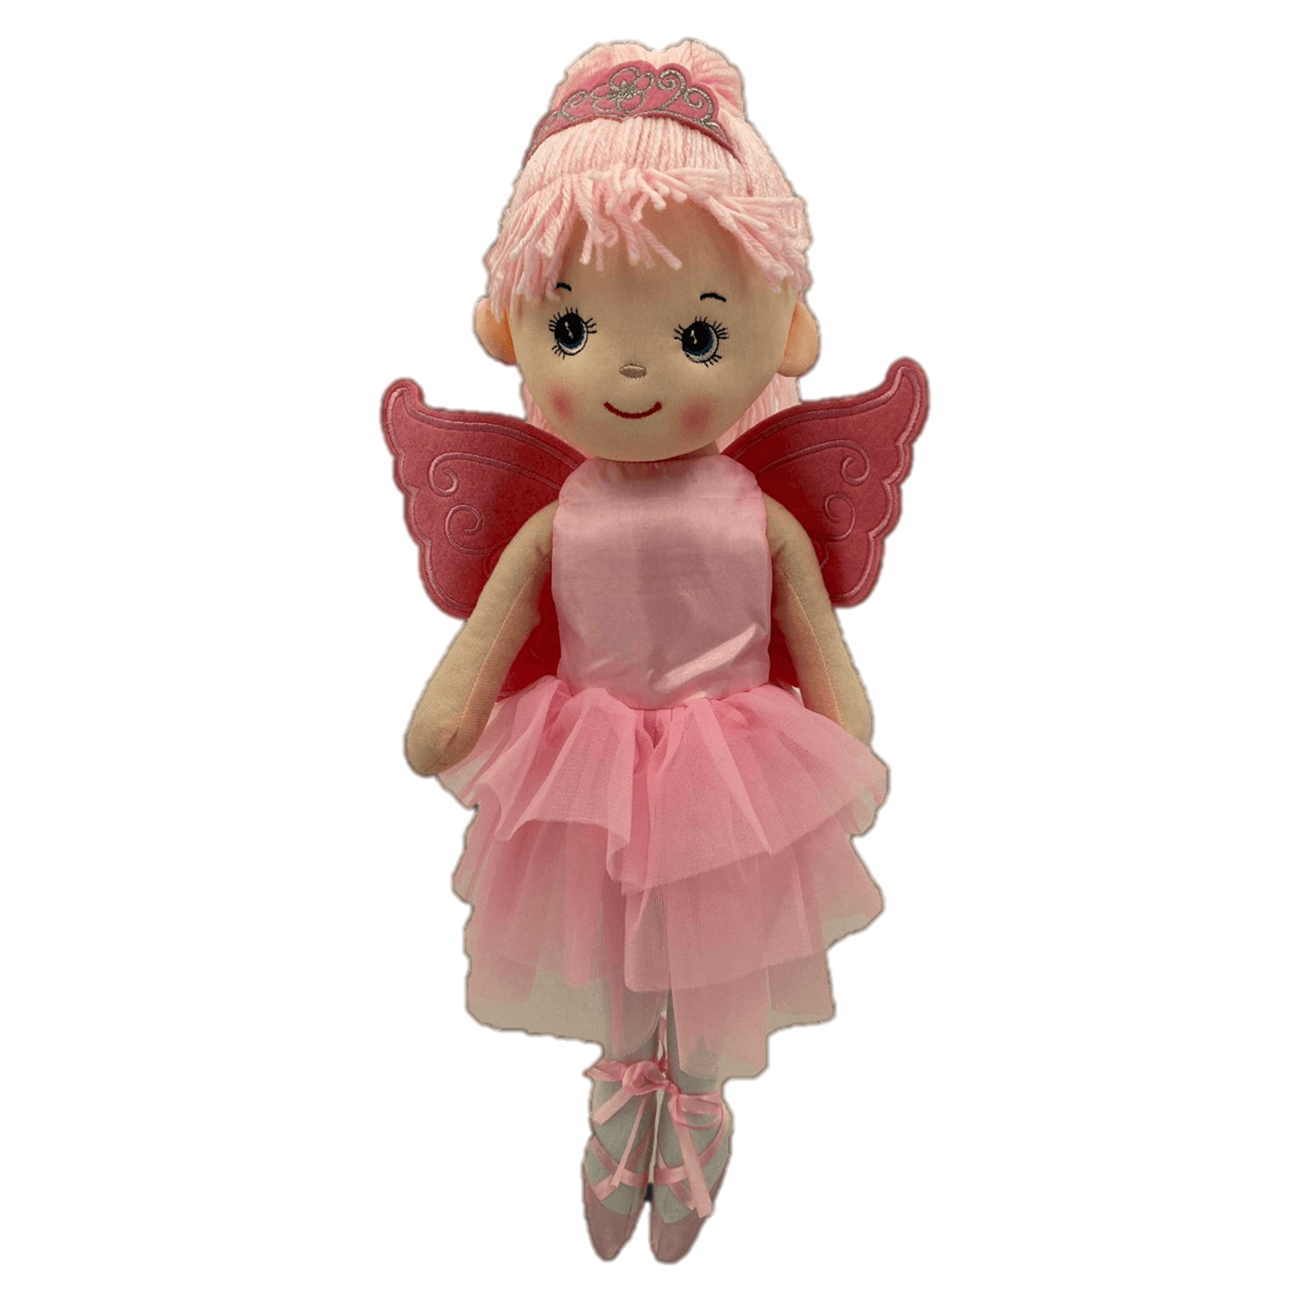 Sweety Toys 13289 knuffelpop softpop ballerina fee knuffel prinses 50 cm roze met kroontje